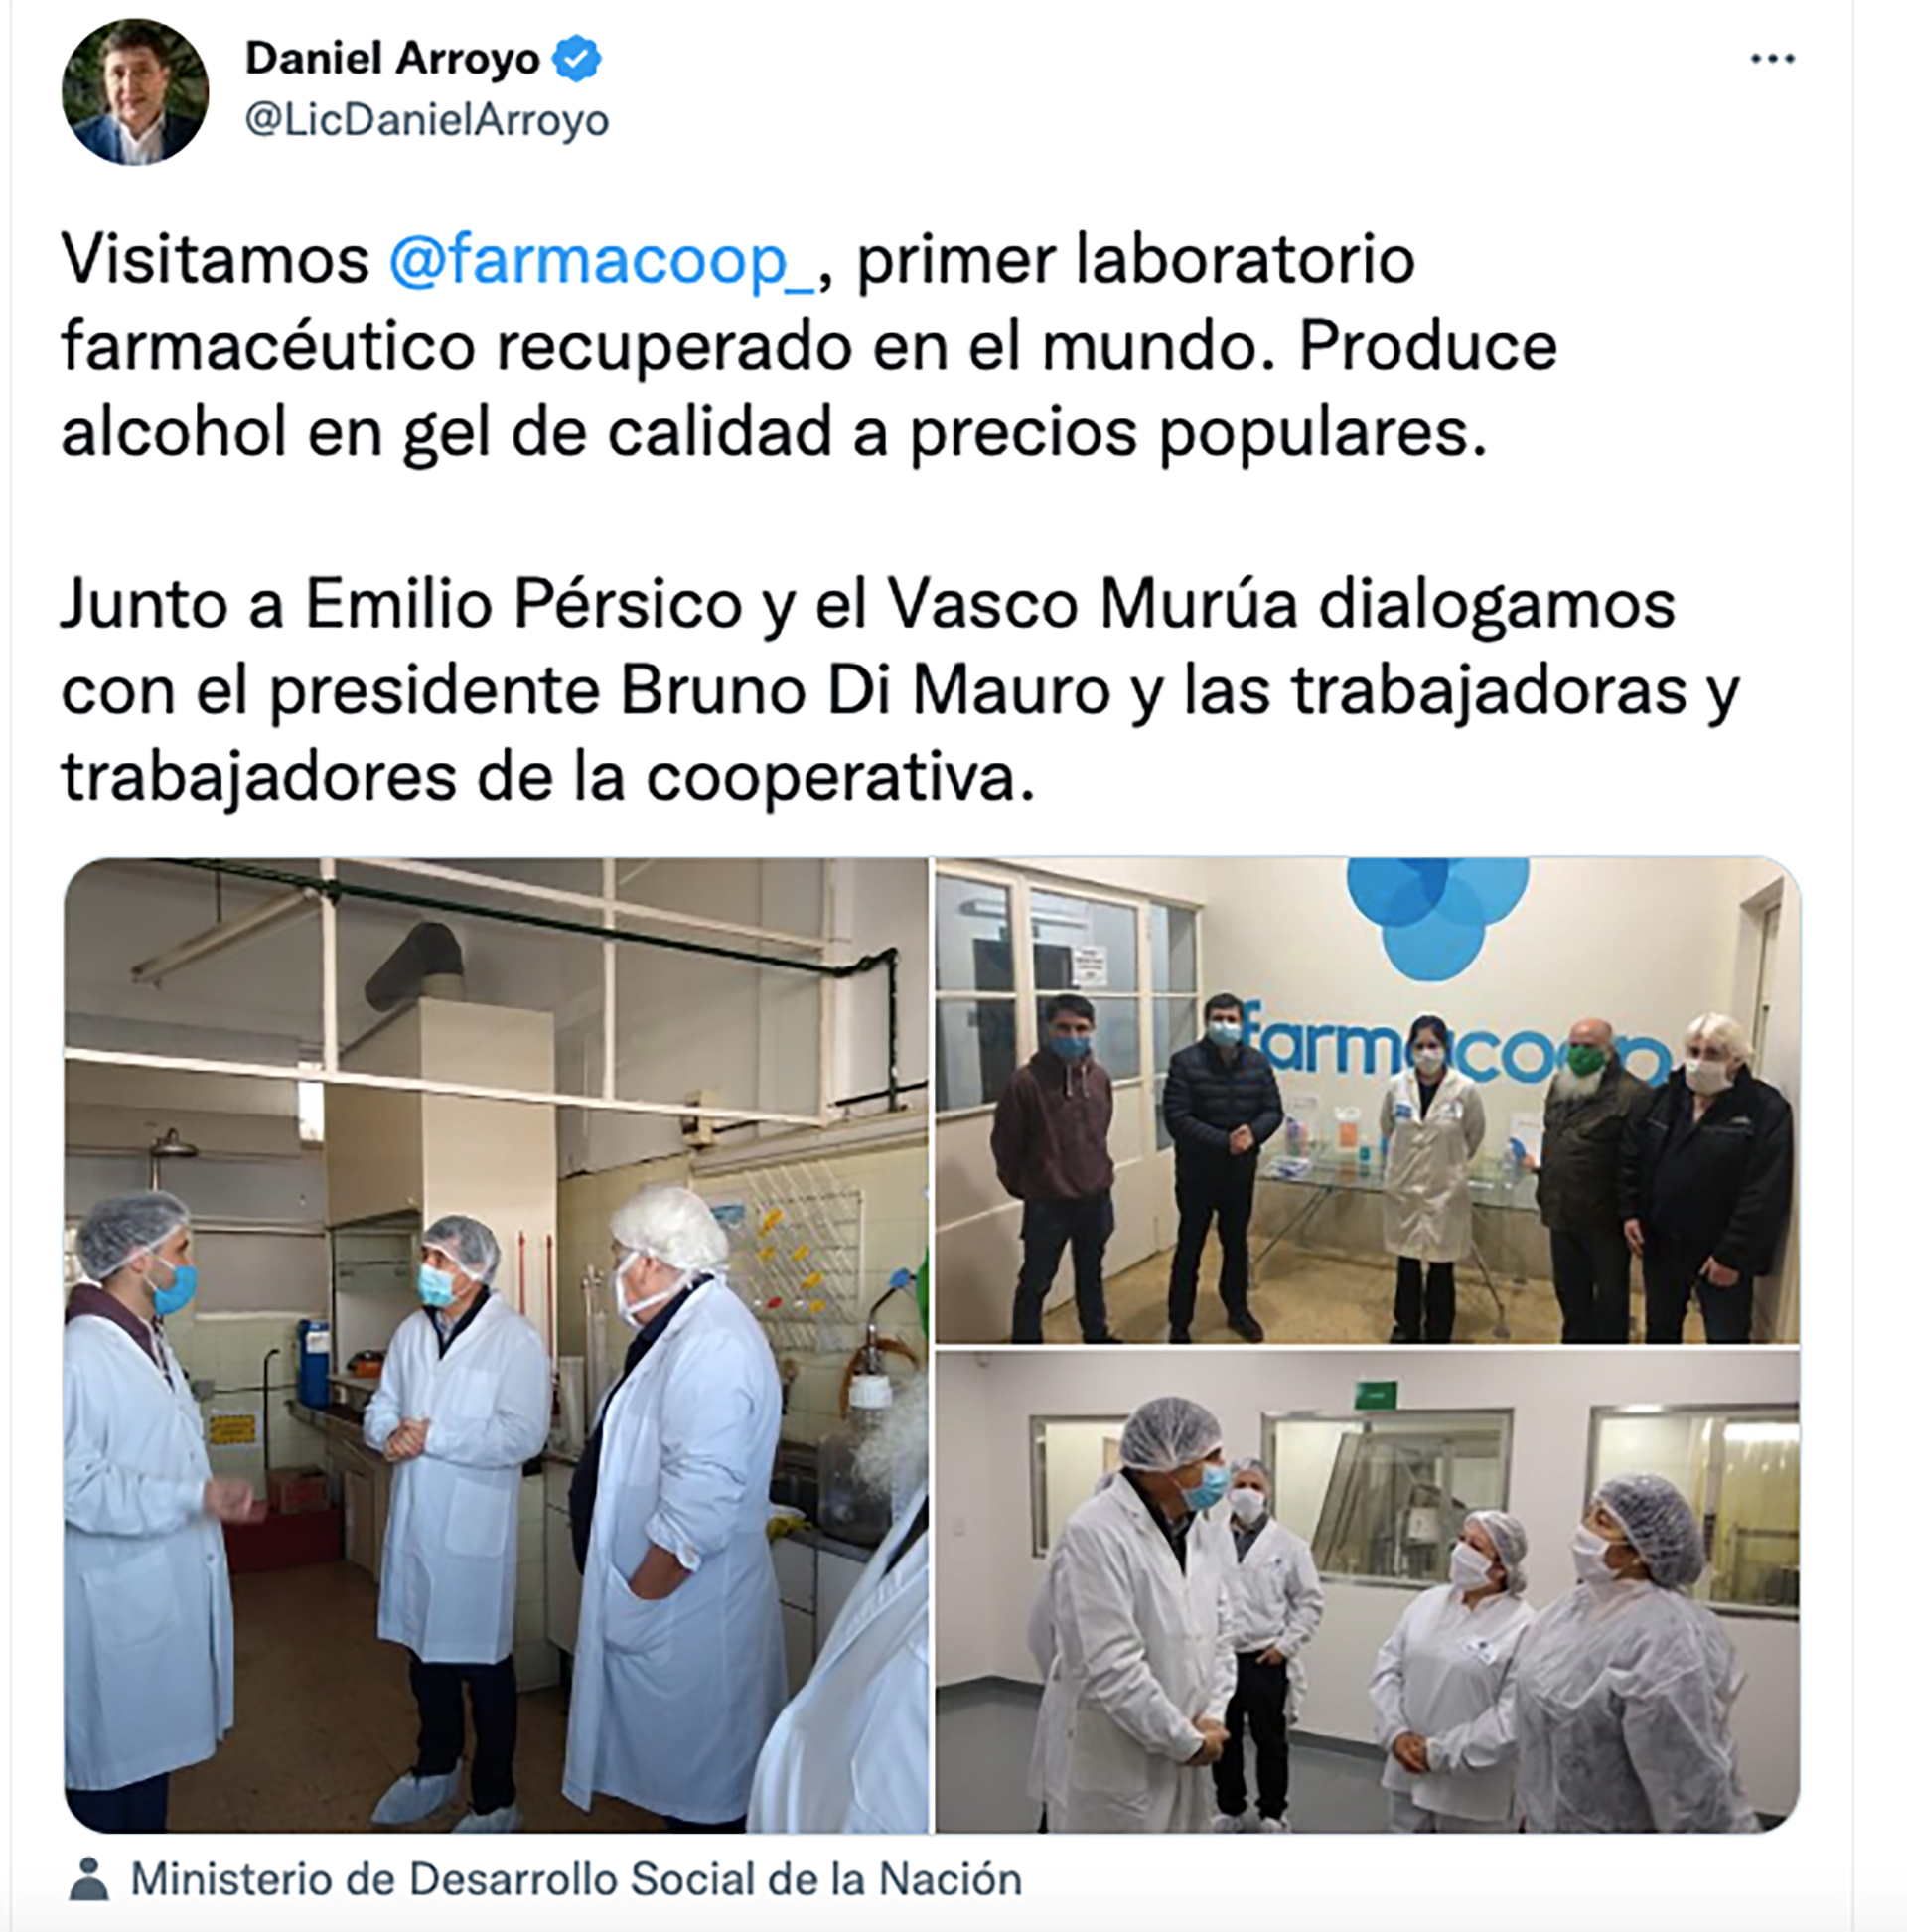 El ex ministro de Desarrollo Social Daniel Arroyo también había visitado el laboratorio